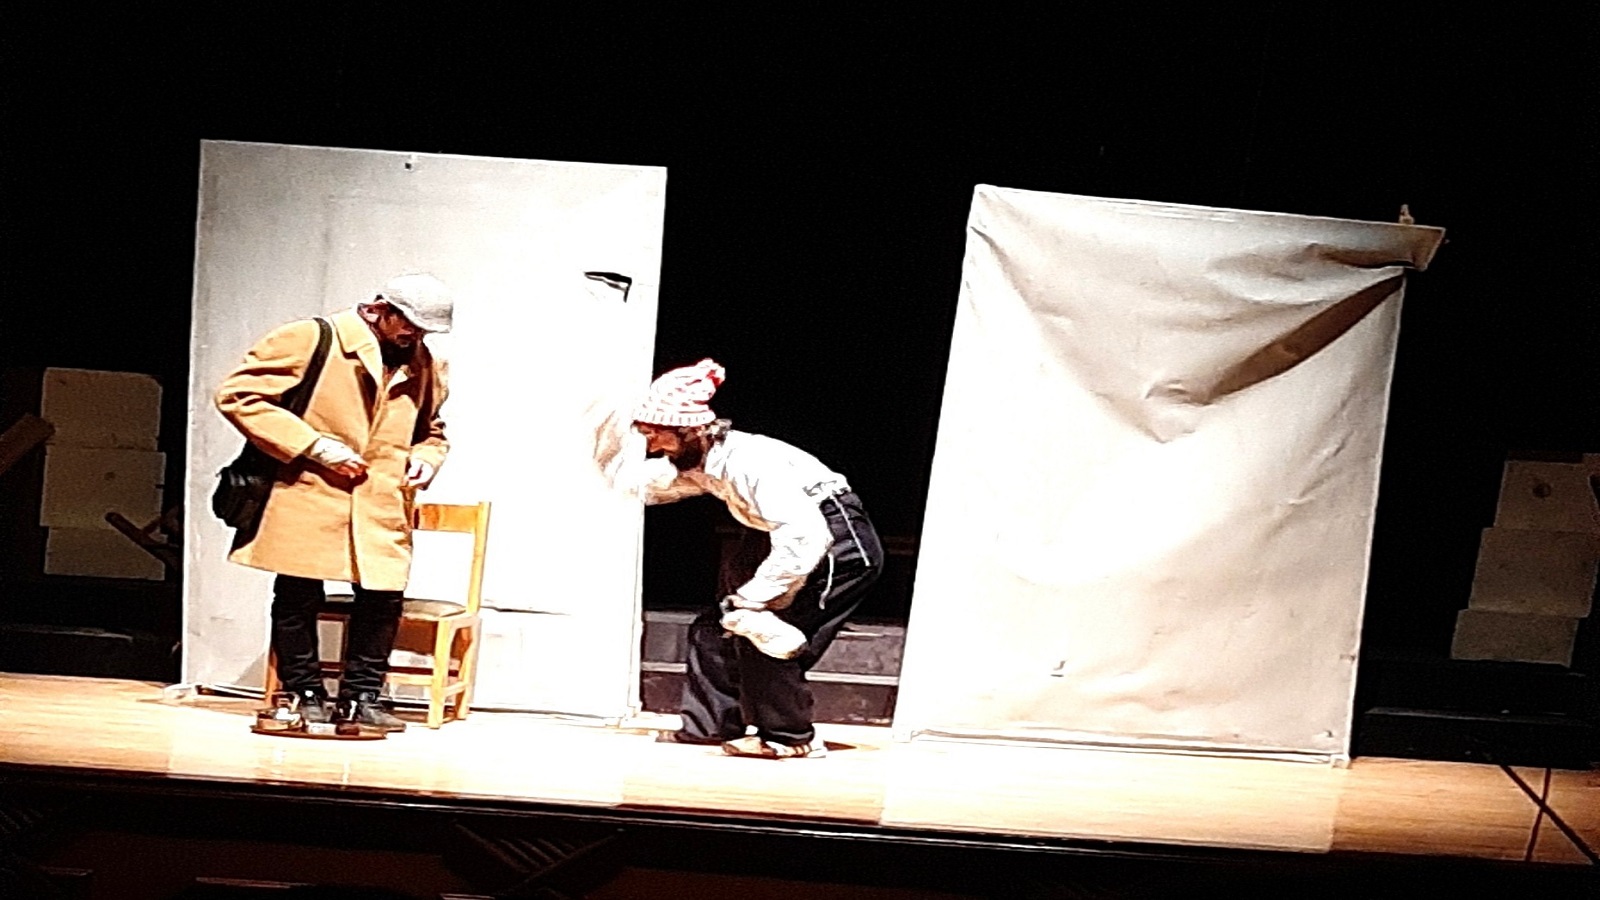 مشهد من مسرحية بلااااا ليوري يورين 2 المدن